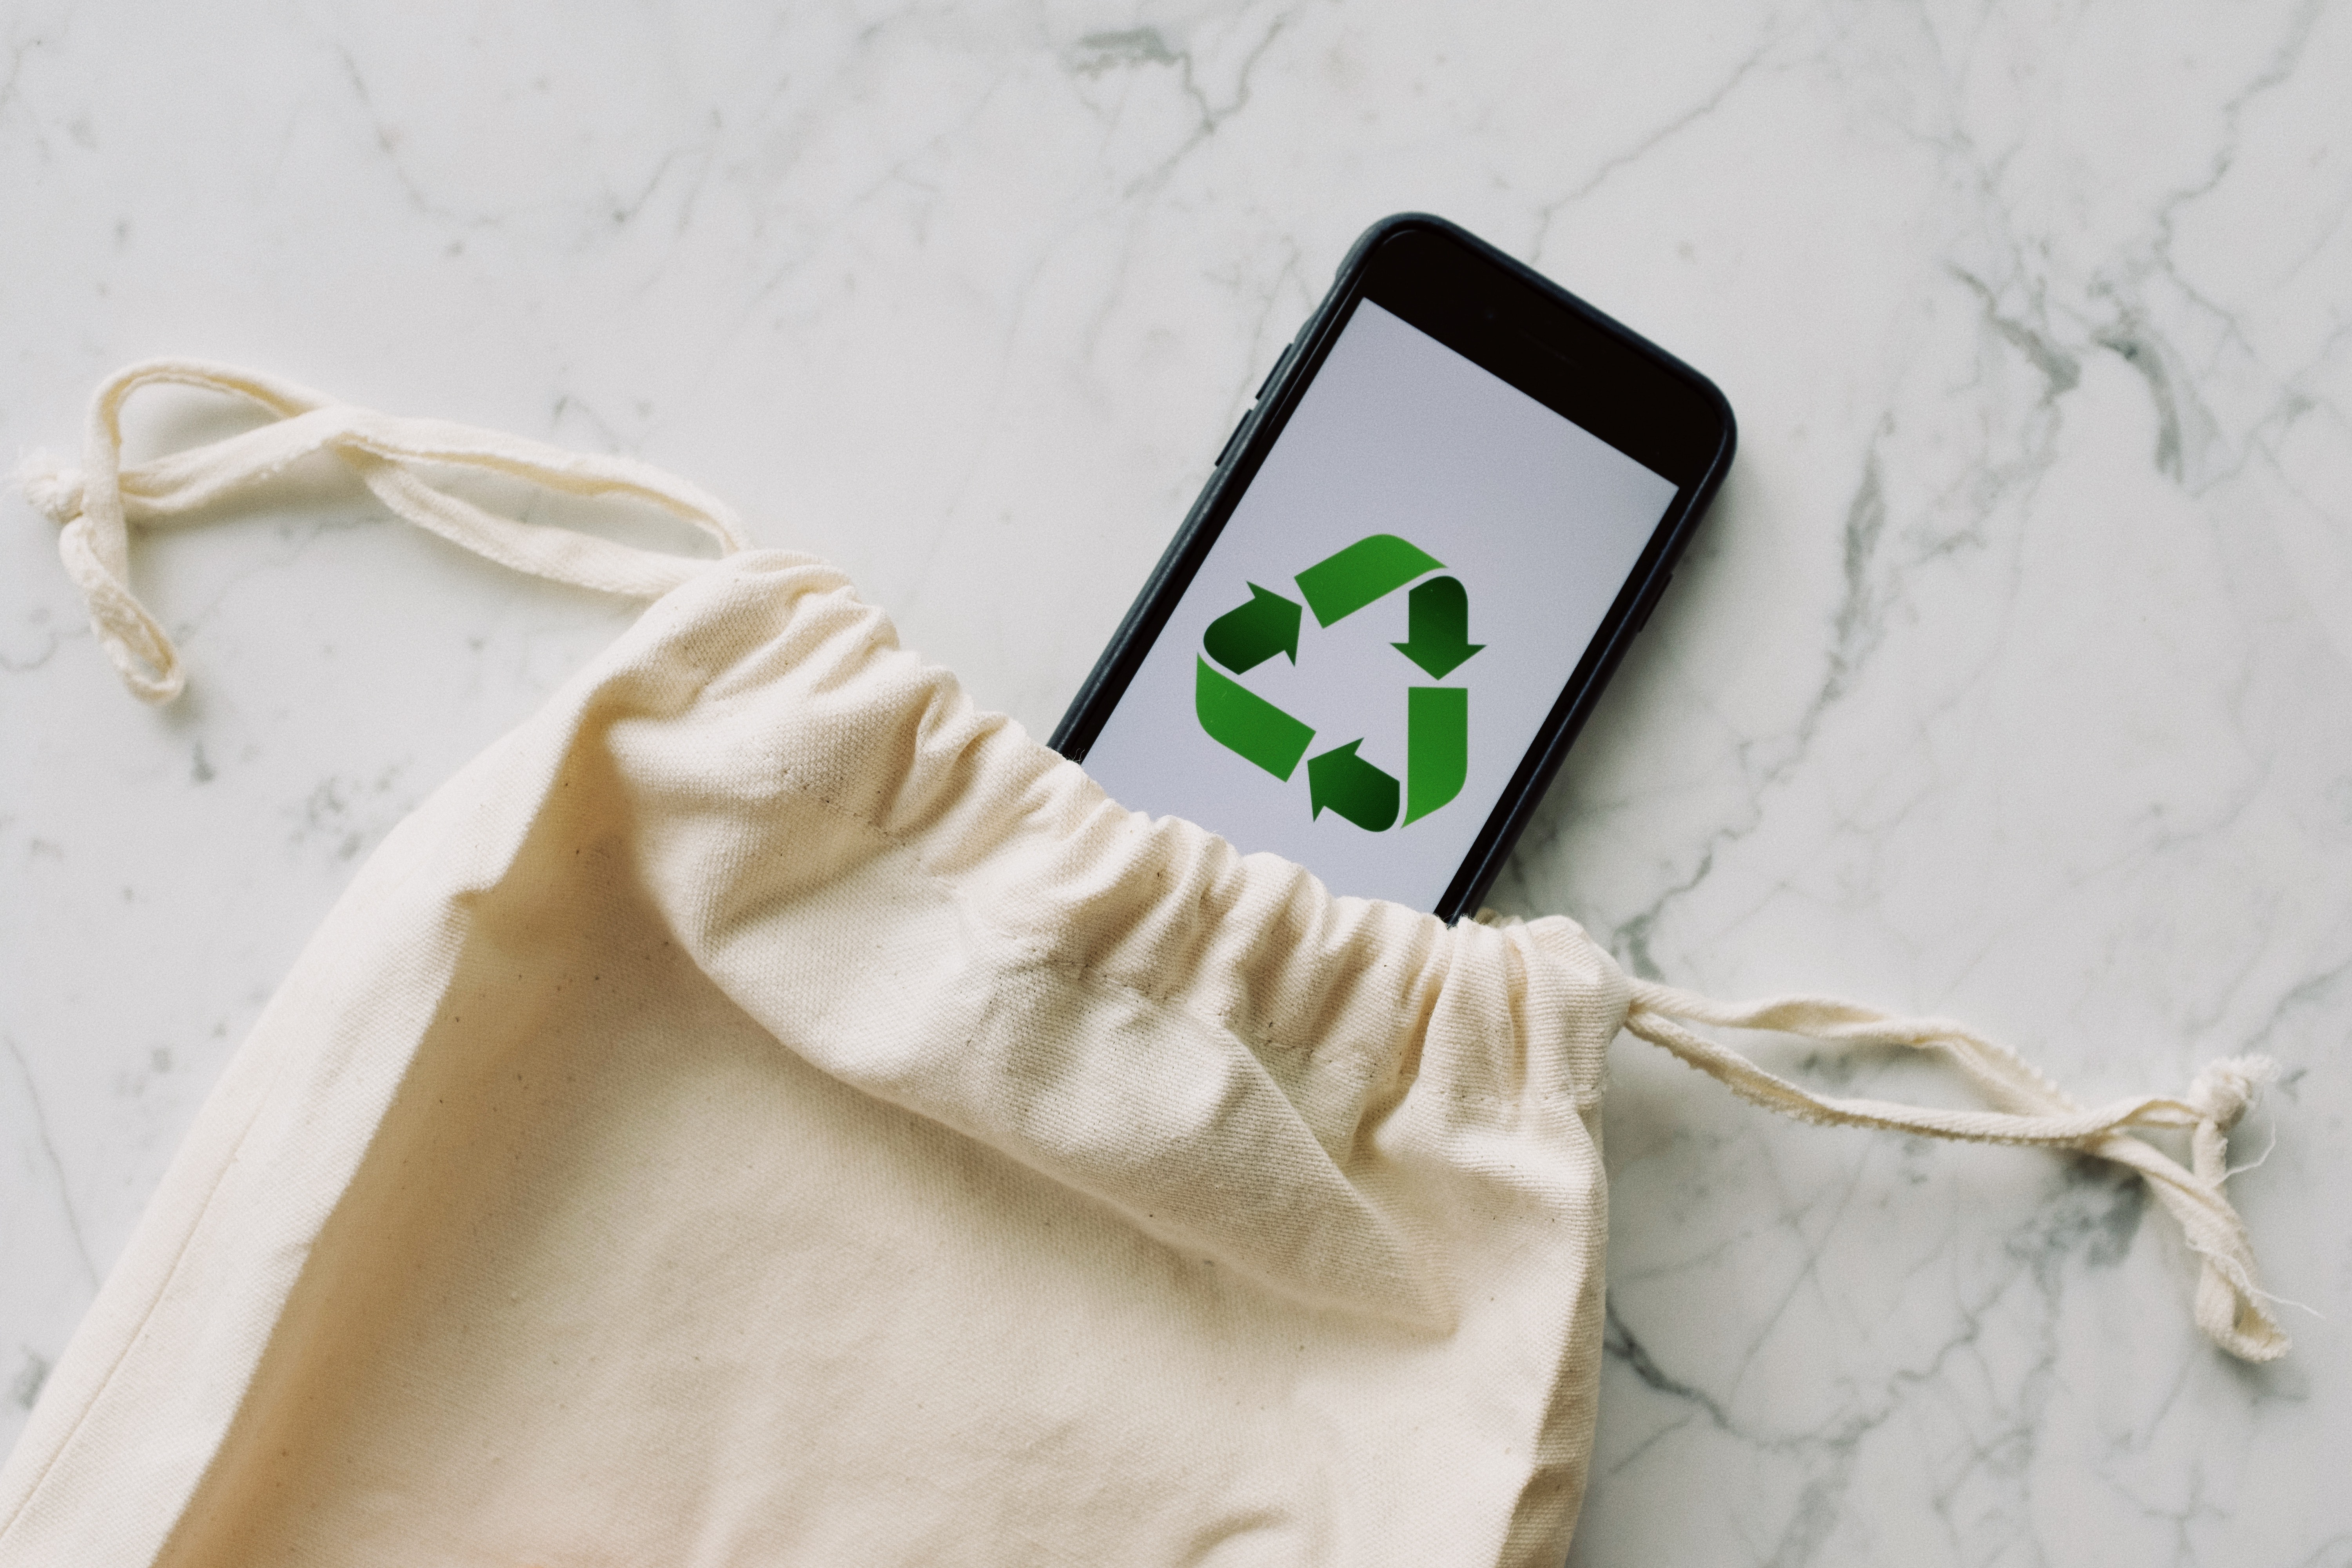 噢啦OOLA环保回收公益平台,行业资讯,噢啦回收,环保回收,旧手机,循环经济发展,旧物